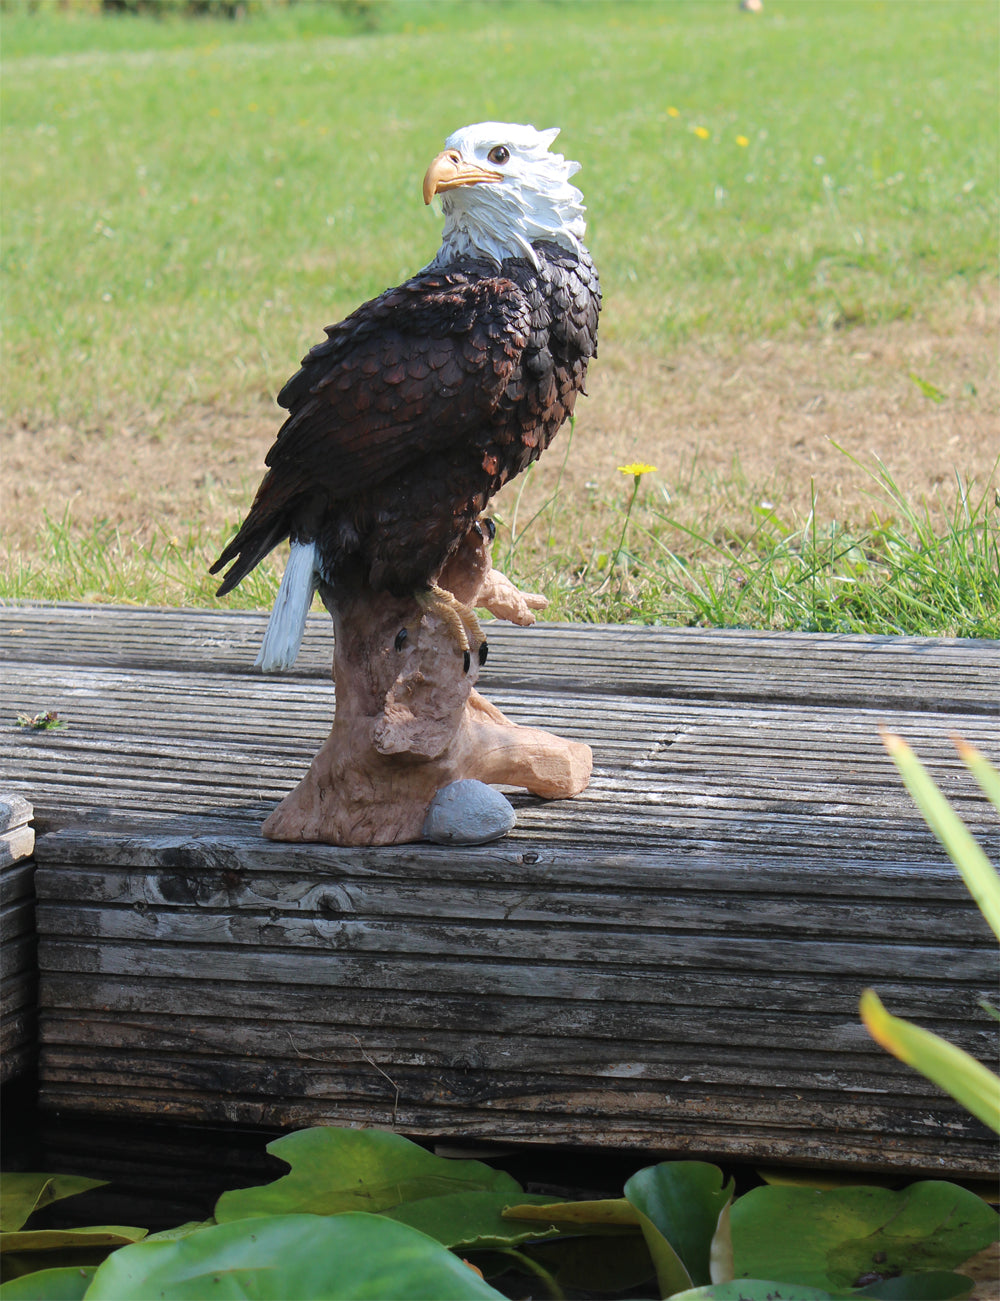 Dekofigur Adler auf Baumstamm 34 cm Gartenfigur Tierfigur